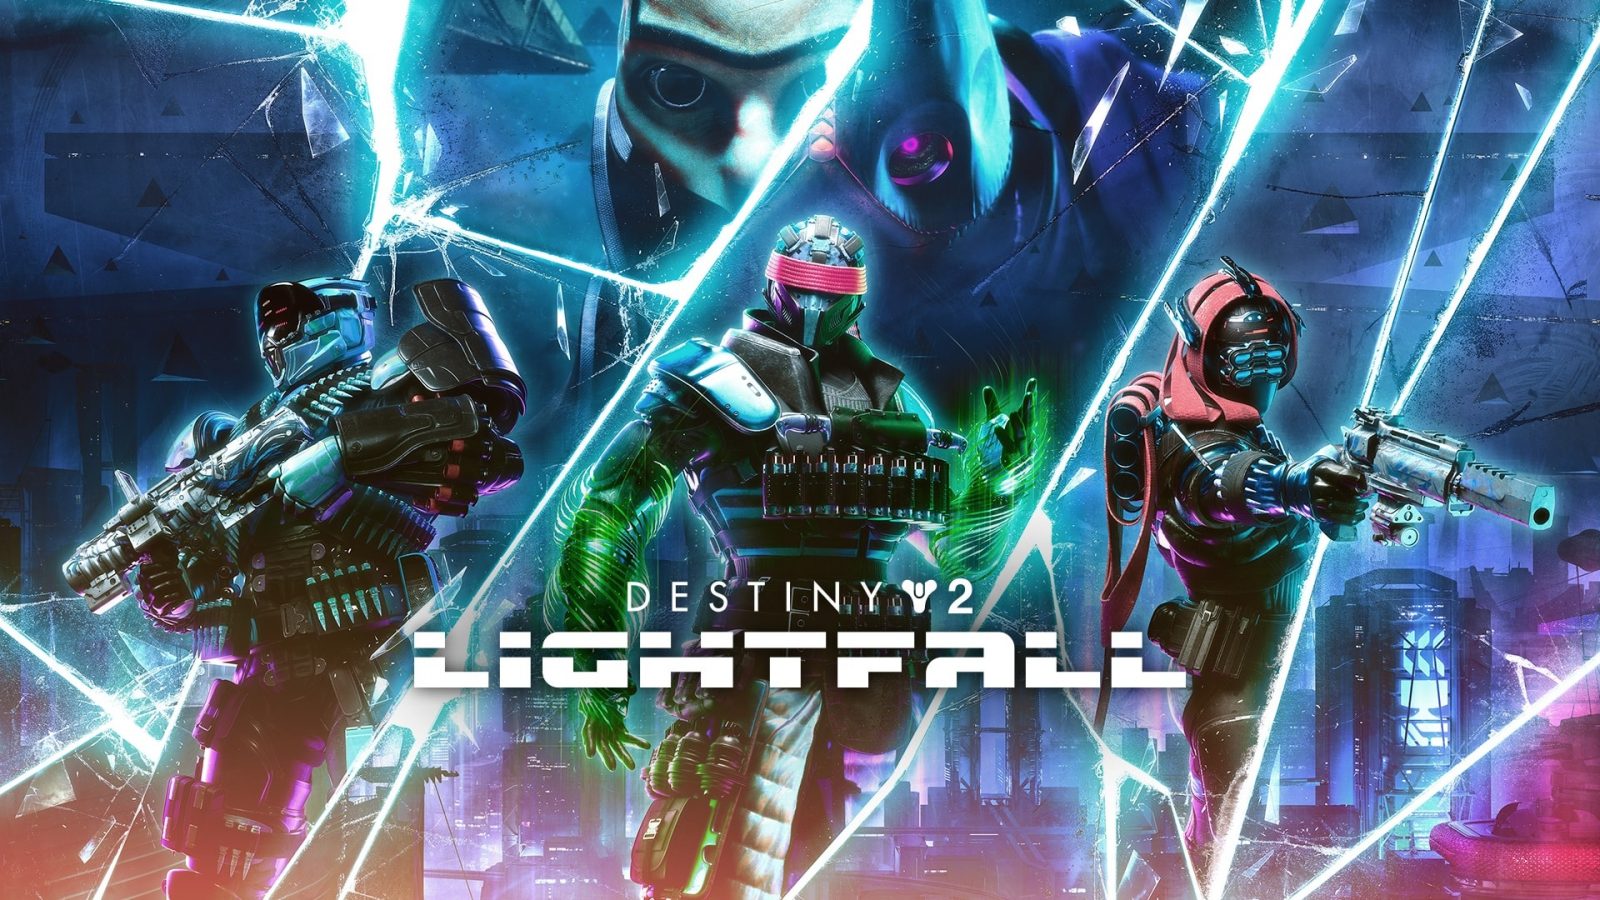 Destiny 2 Lightfall Key Art แสดงตัวละครสำคัญที่อยู่เบื้องหลังการขยายตัว